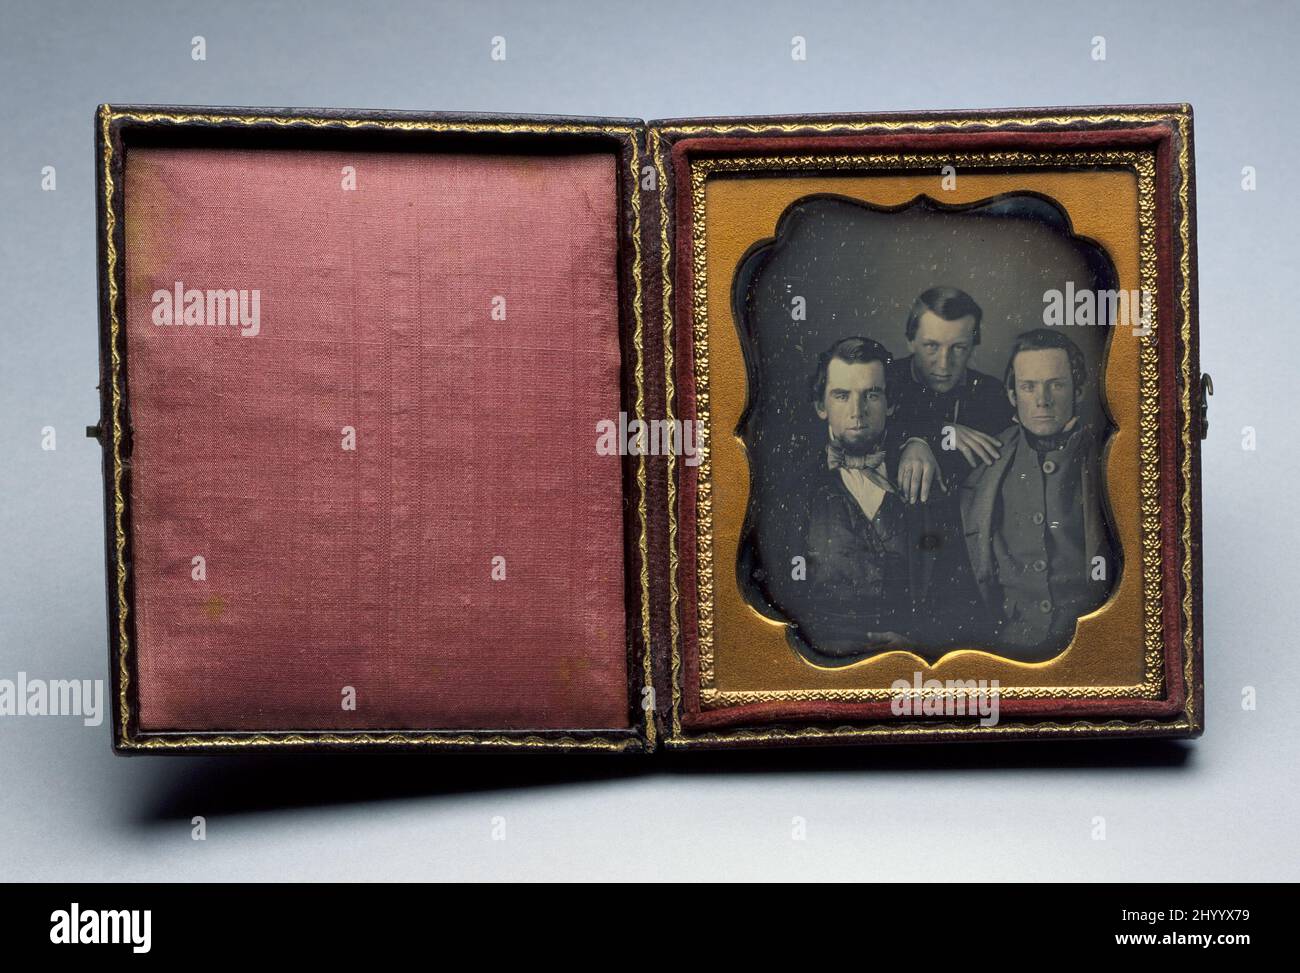 Portrait de 3 hommes non identifiés. Vers 1850. Photographies. Daguerréotype (1/6 plaques) avec 4 supports de protection dans un étui en cuir Banque D'Images